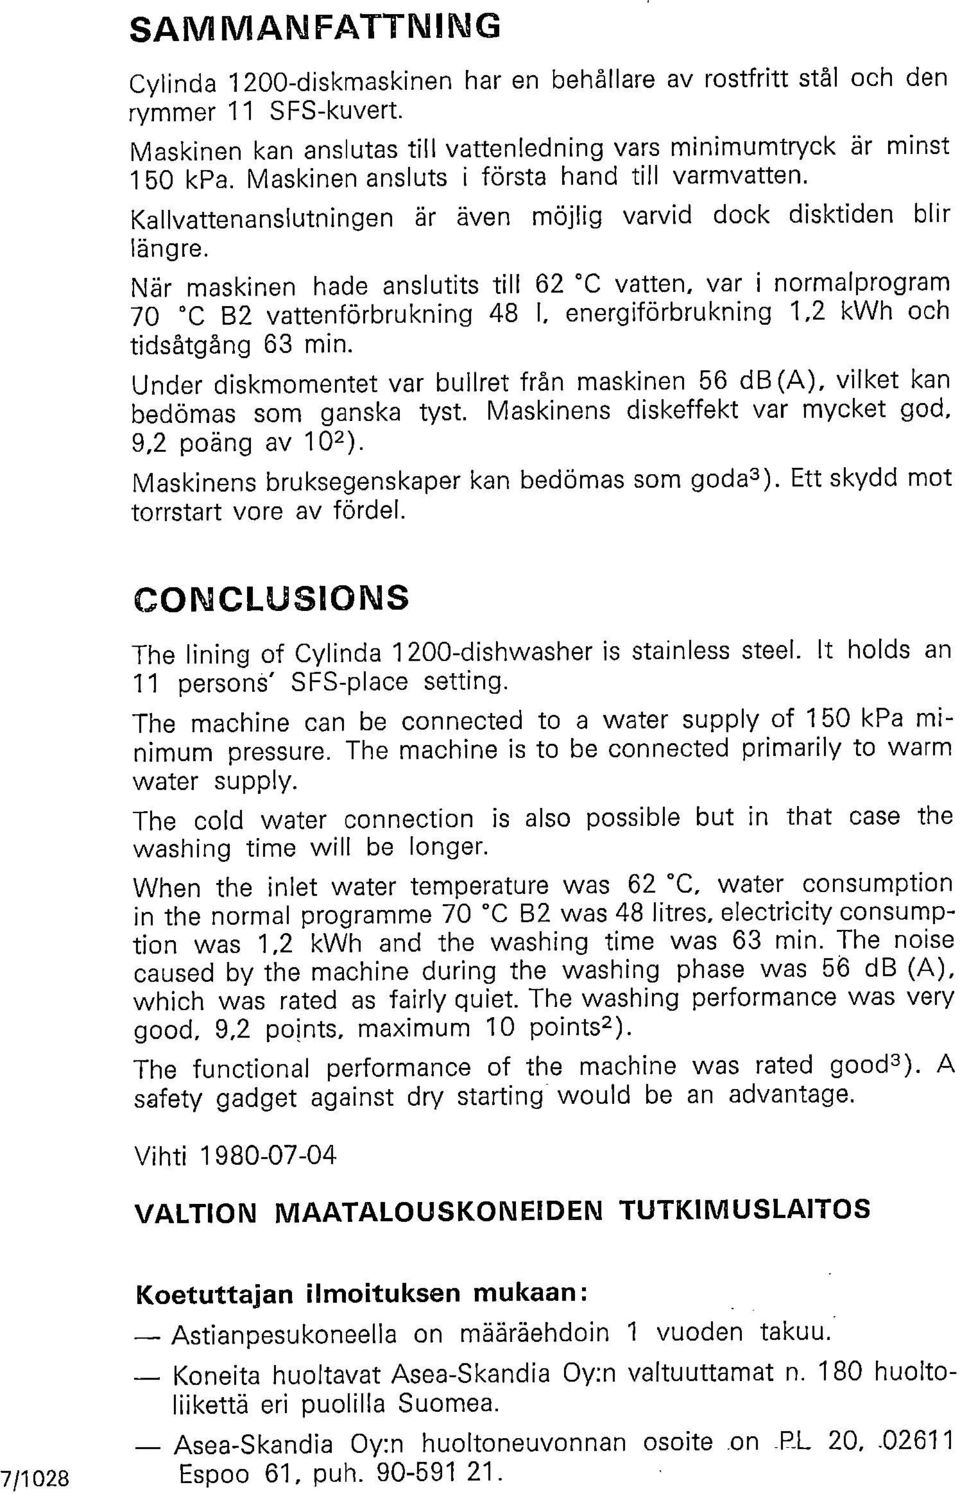 När maskinen hade anslutits till 62 C vatten, var i normalprogram 70 C B2 vattenförbrukning 48 1, energiförbrukning 1,2 kwh och tidsåtgång 63 min.